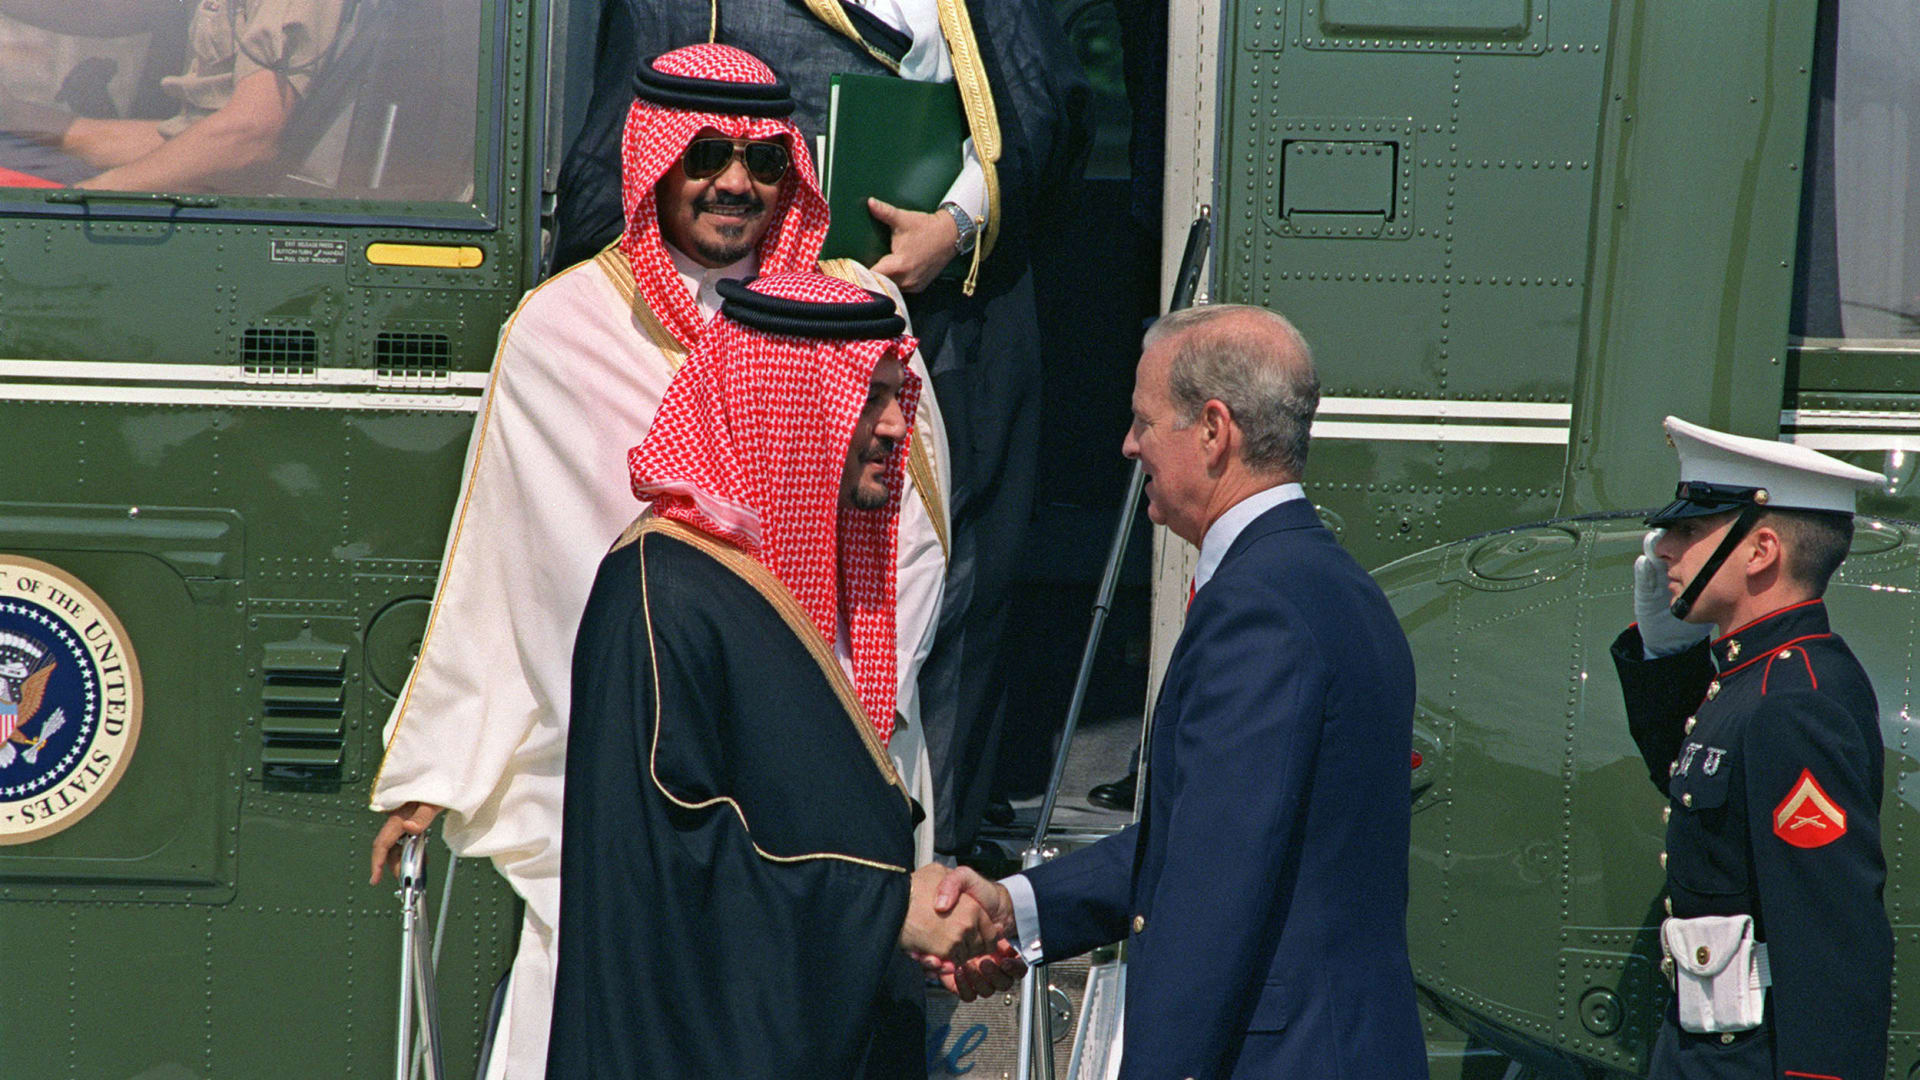 صورة ارشيفية للأمير بندر بن سلطان ينزل من الطائرة خلف الأمير الراحل سعود الفيصل بأمريكا العام 1990